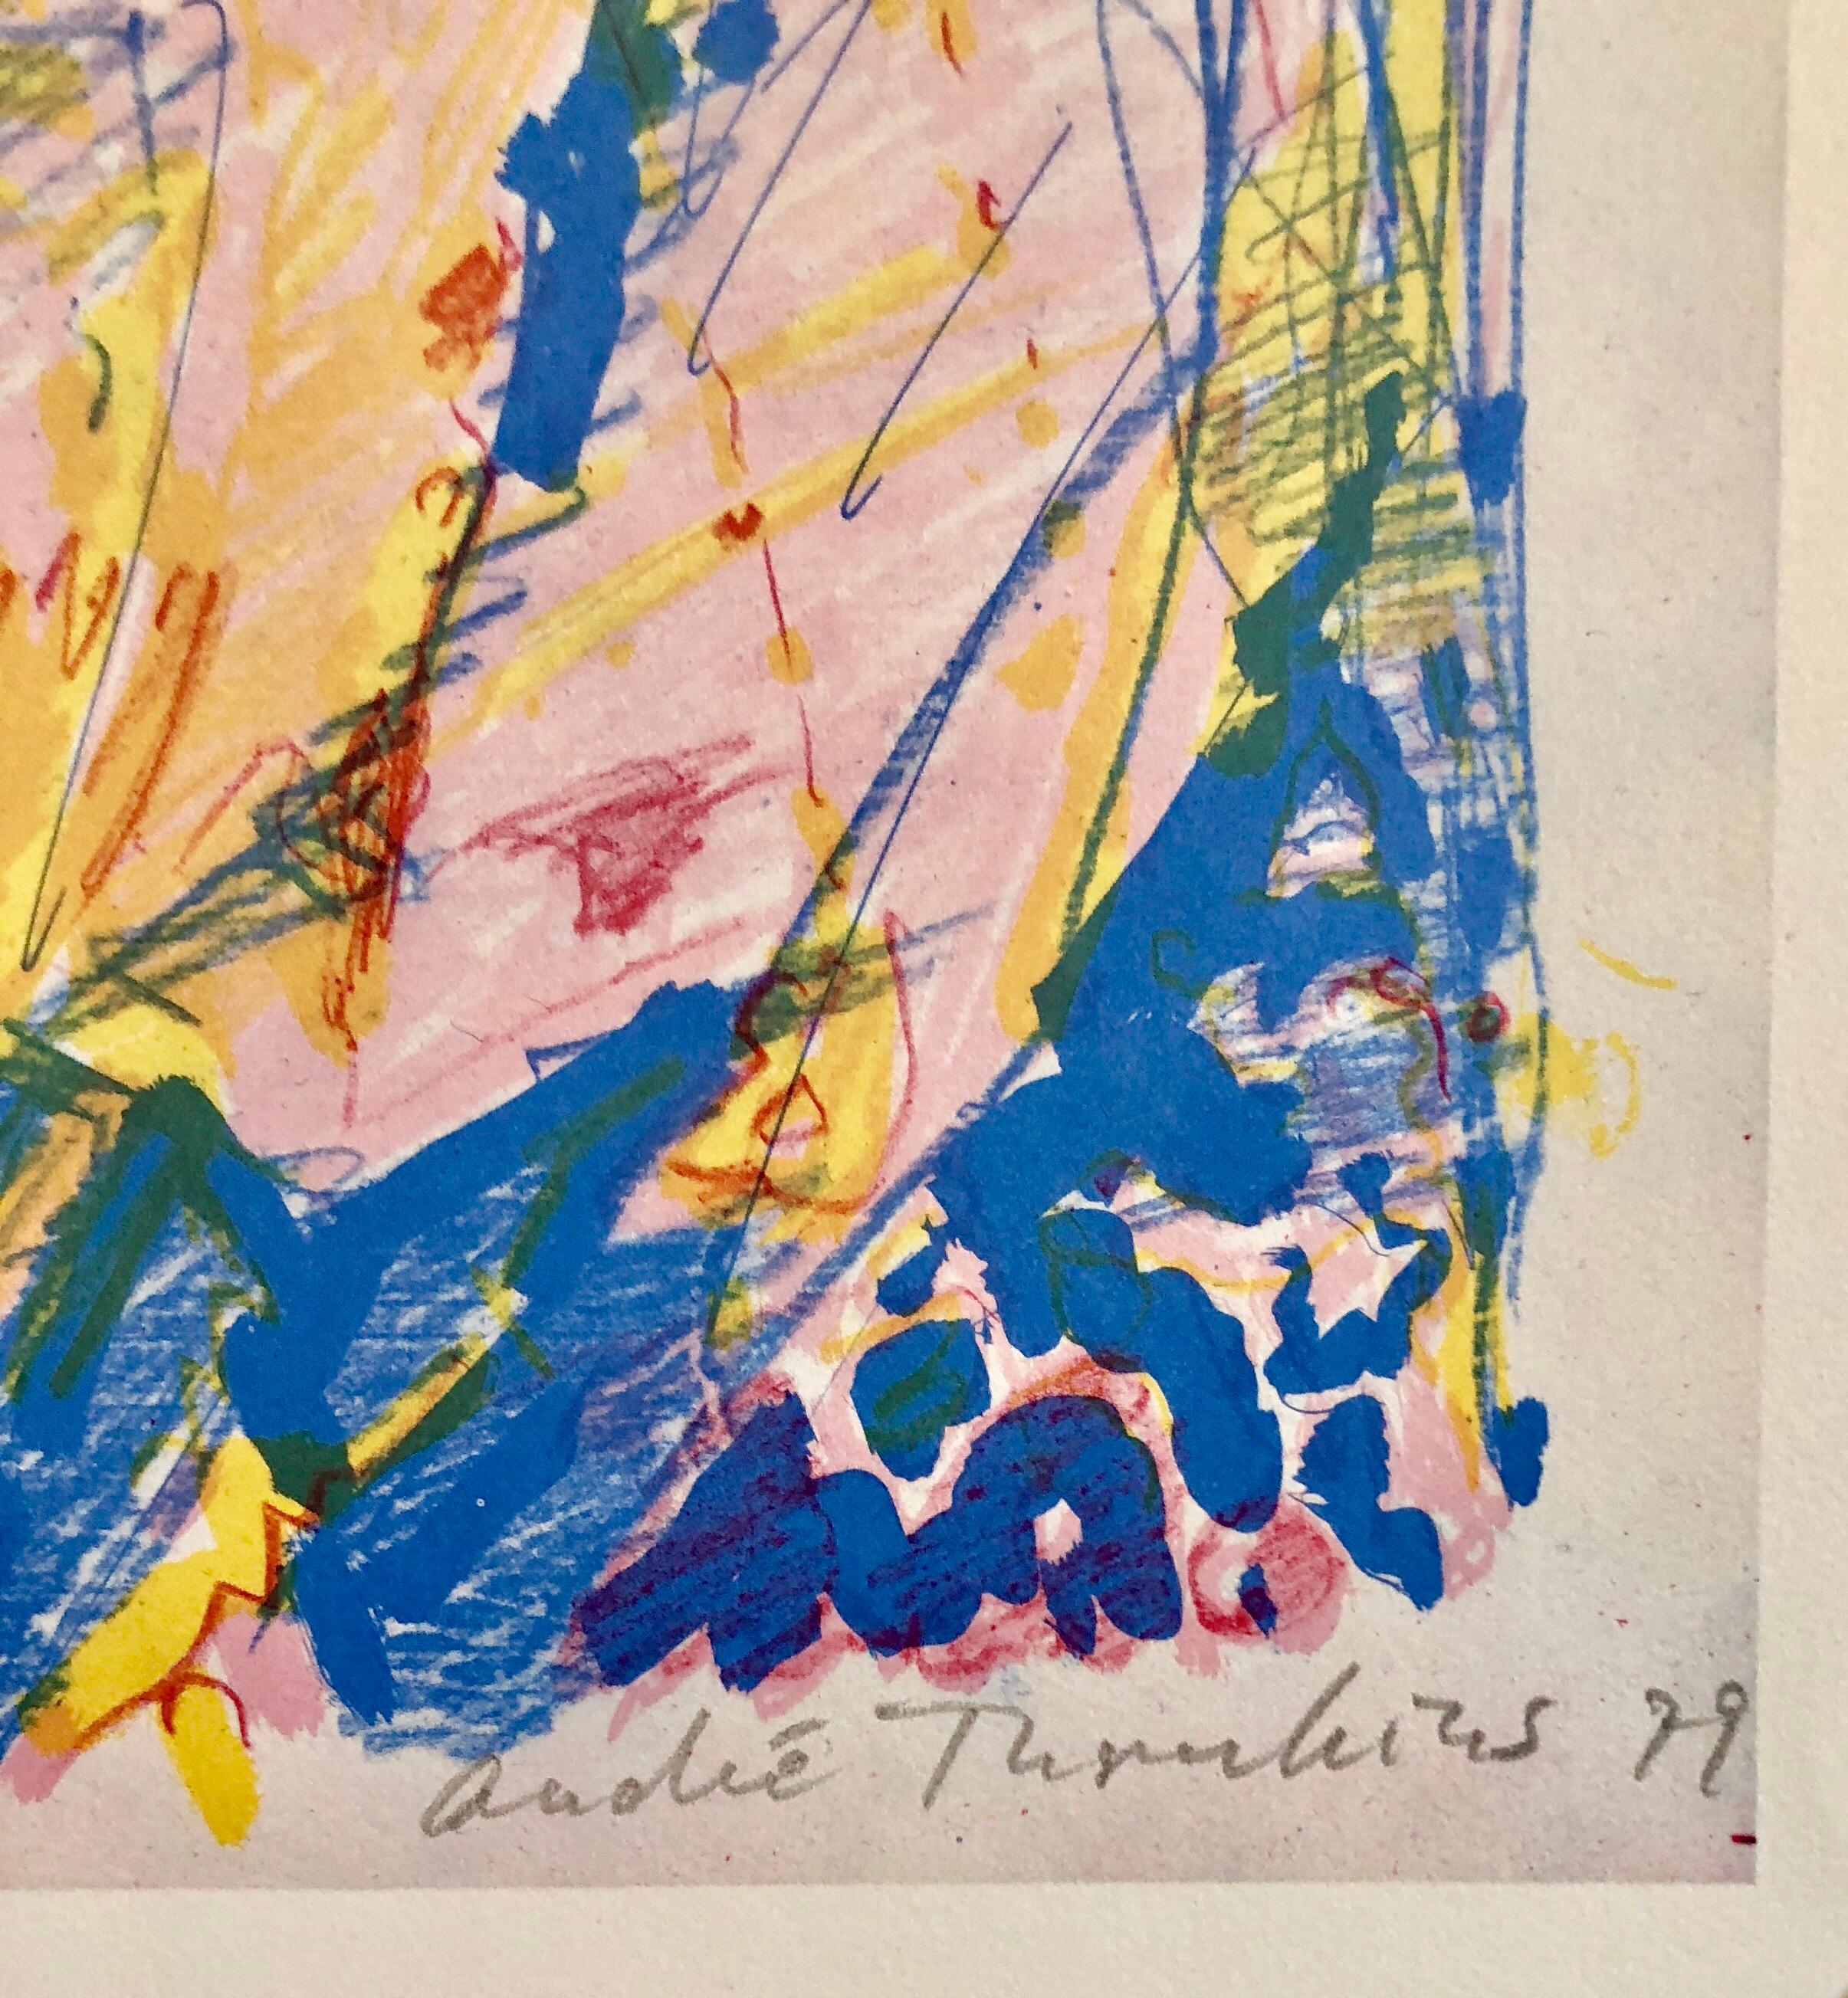 Modernistischer Schweizer farbenfroher Surrealismus der 1970er Jahre, signierte Dada-Lithographie Andre Thomkins – Print von André Thomkins